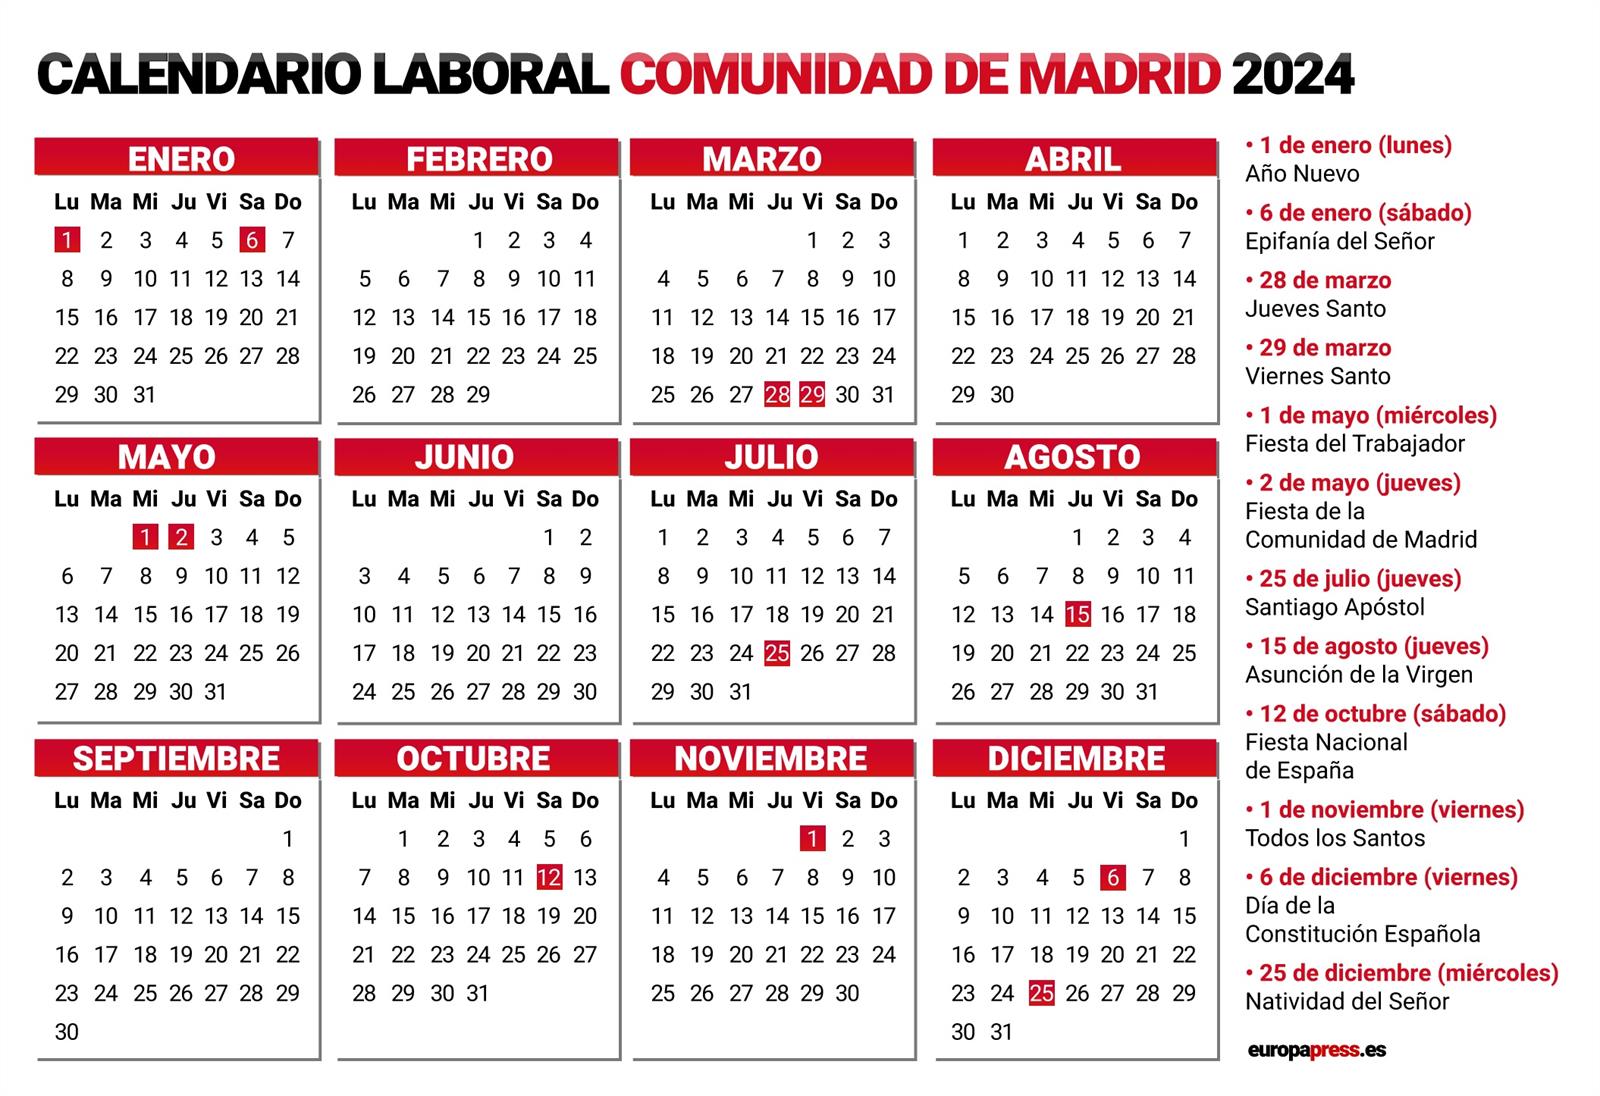 Calendario laboral en la Comunidad de Madrid para 2024